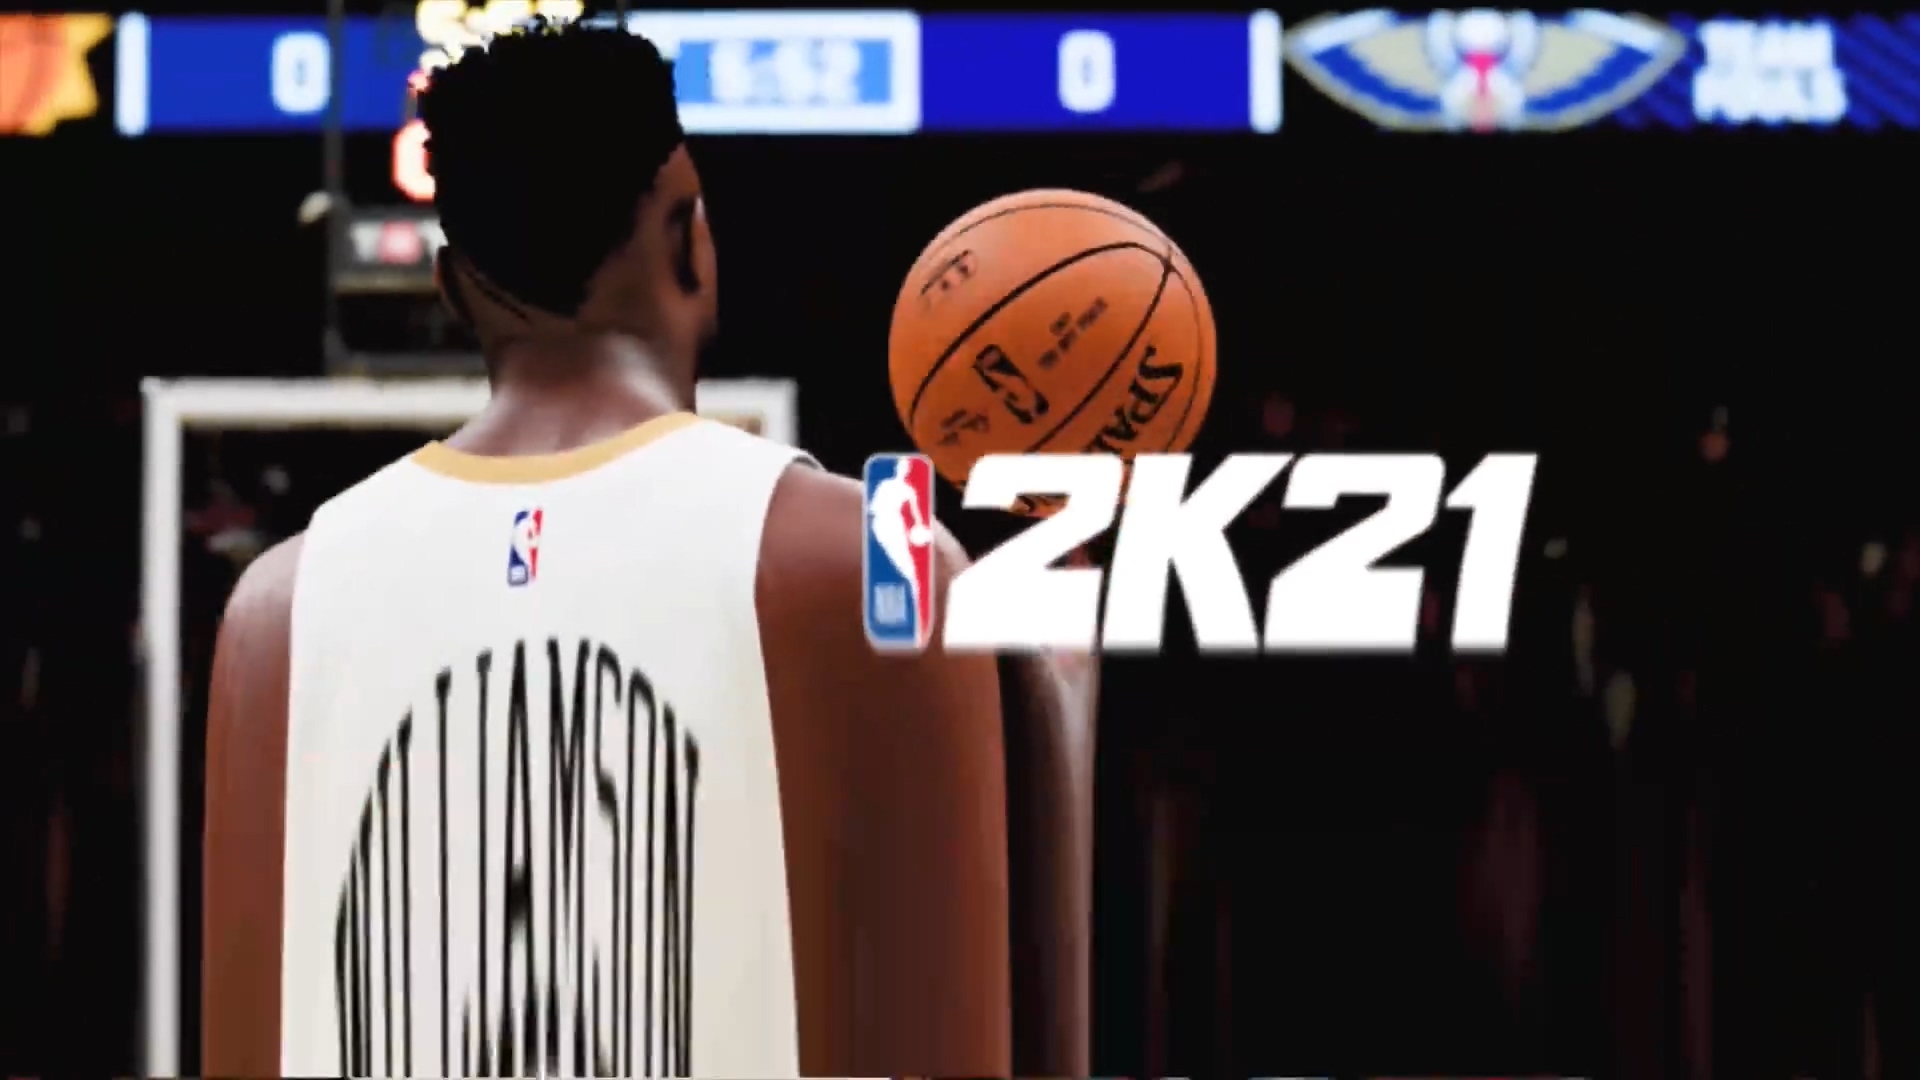 次世代版《NBA 2K21》實機畫面公開 閃電般的加載速度